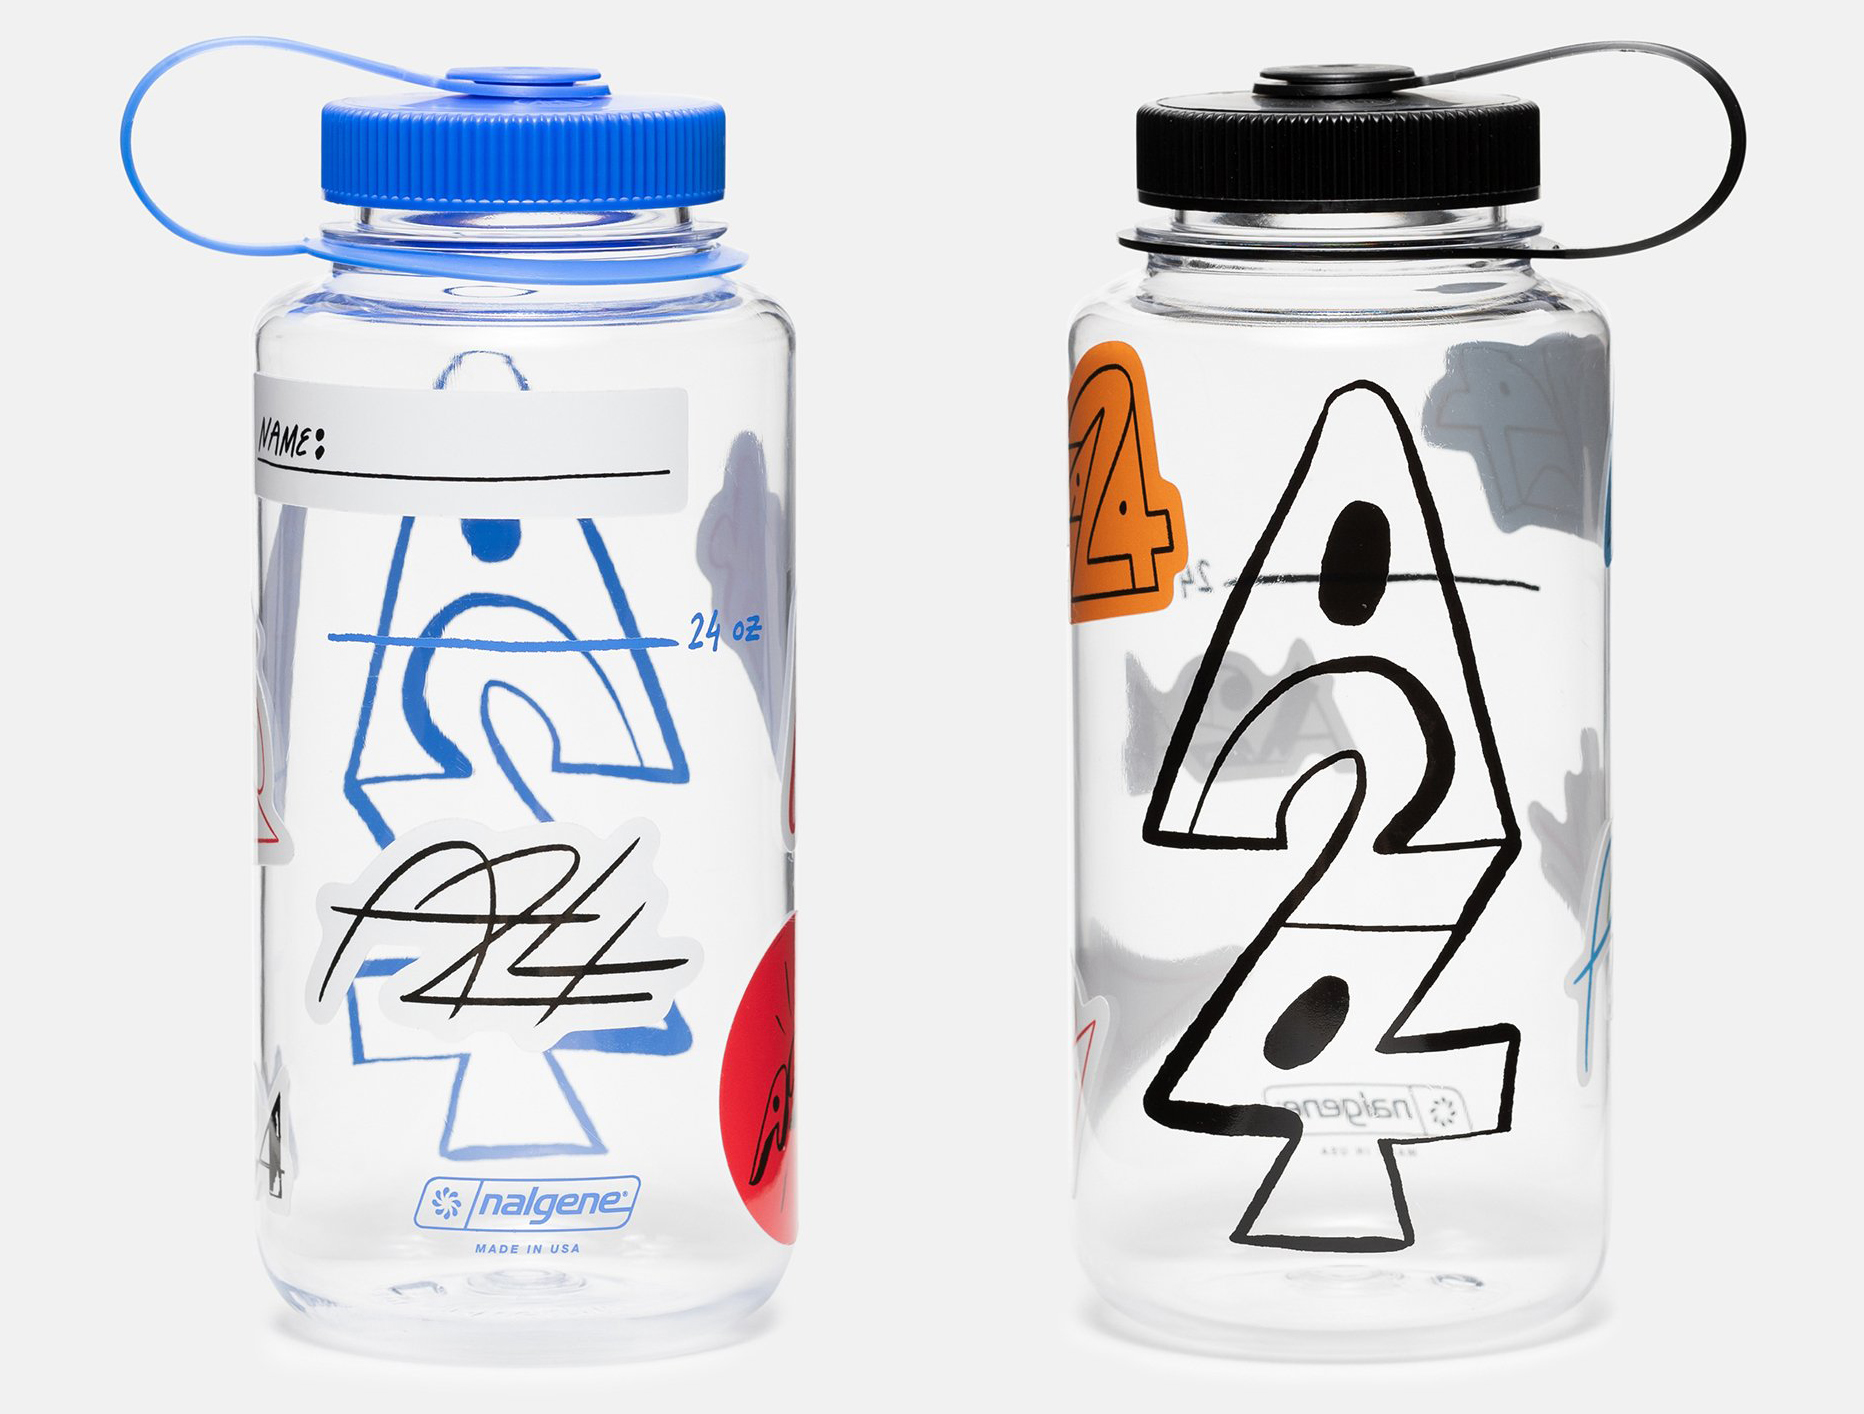 24oz Water Bottles  BPA Free - Nalgene